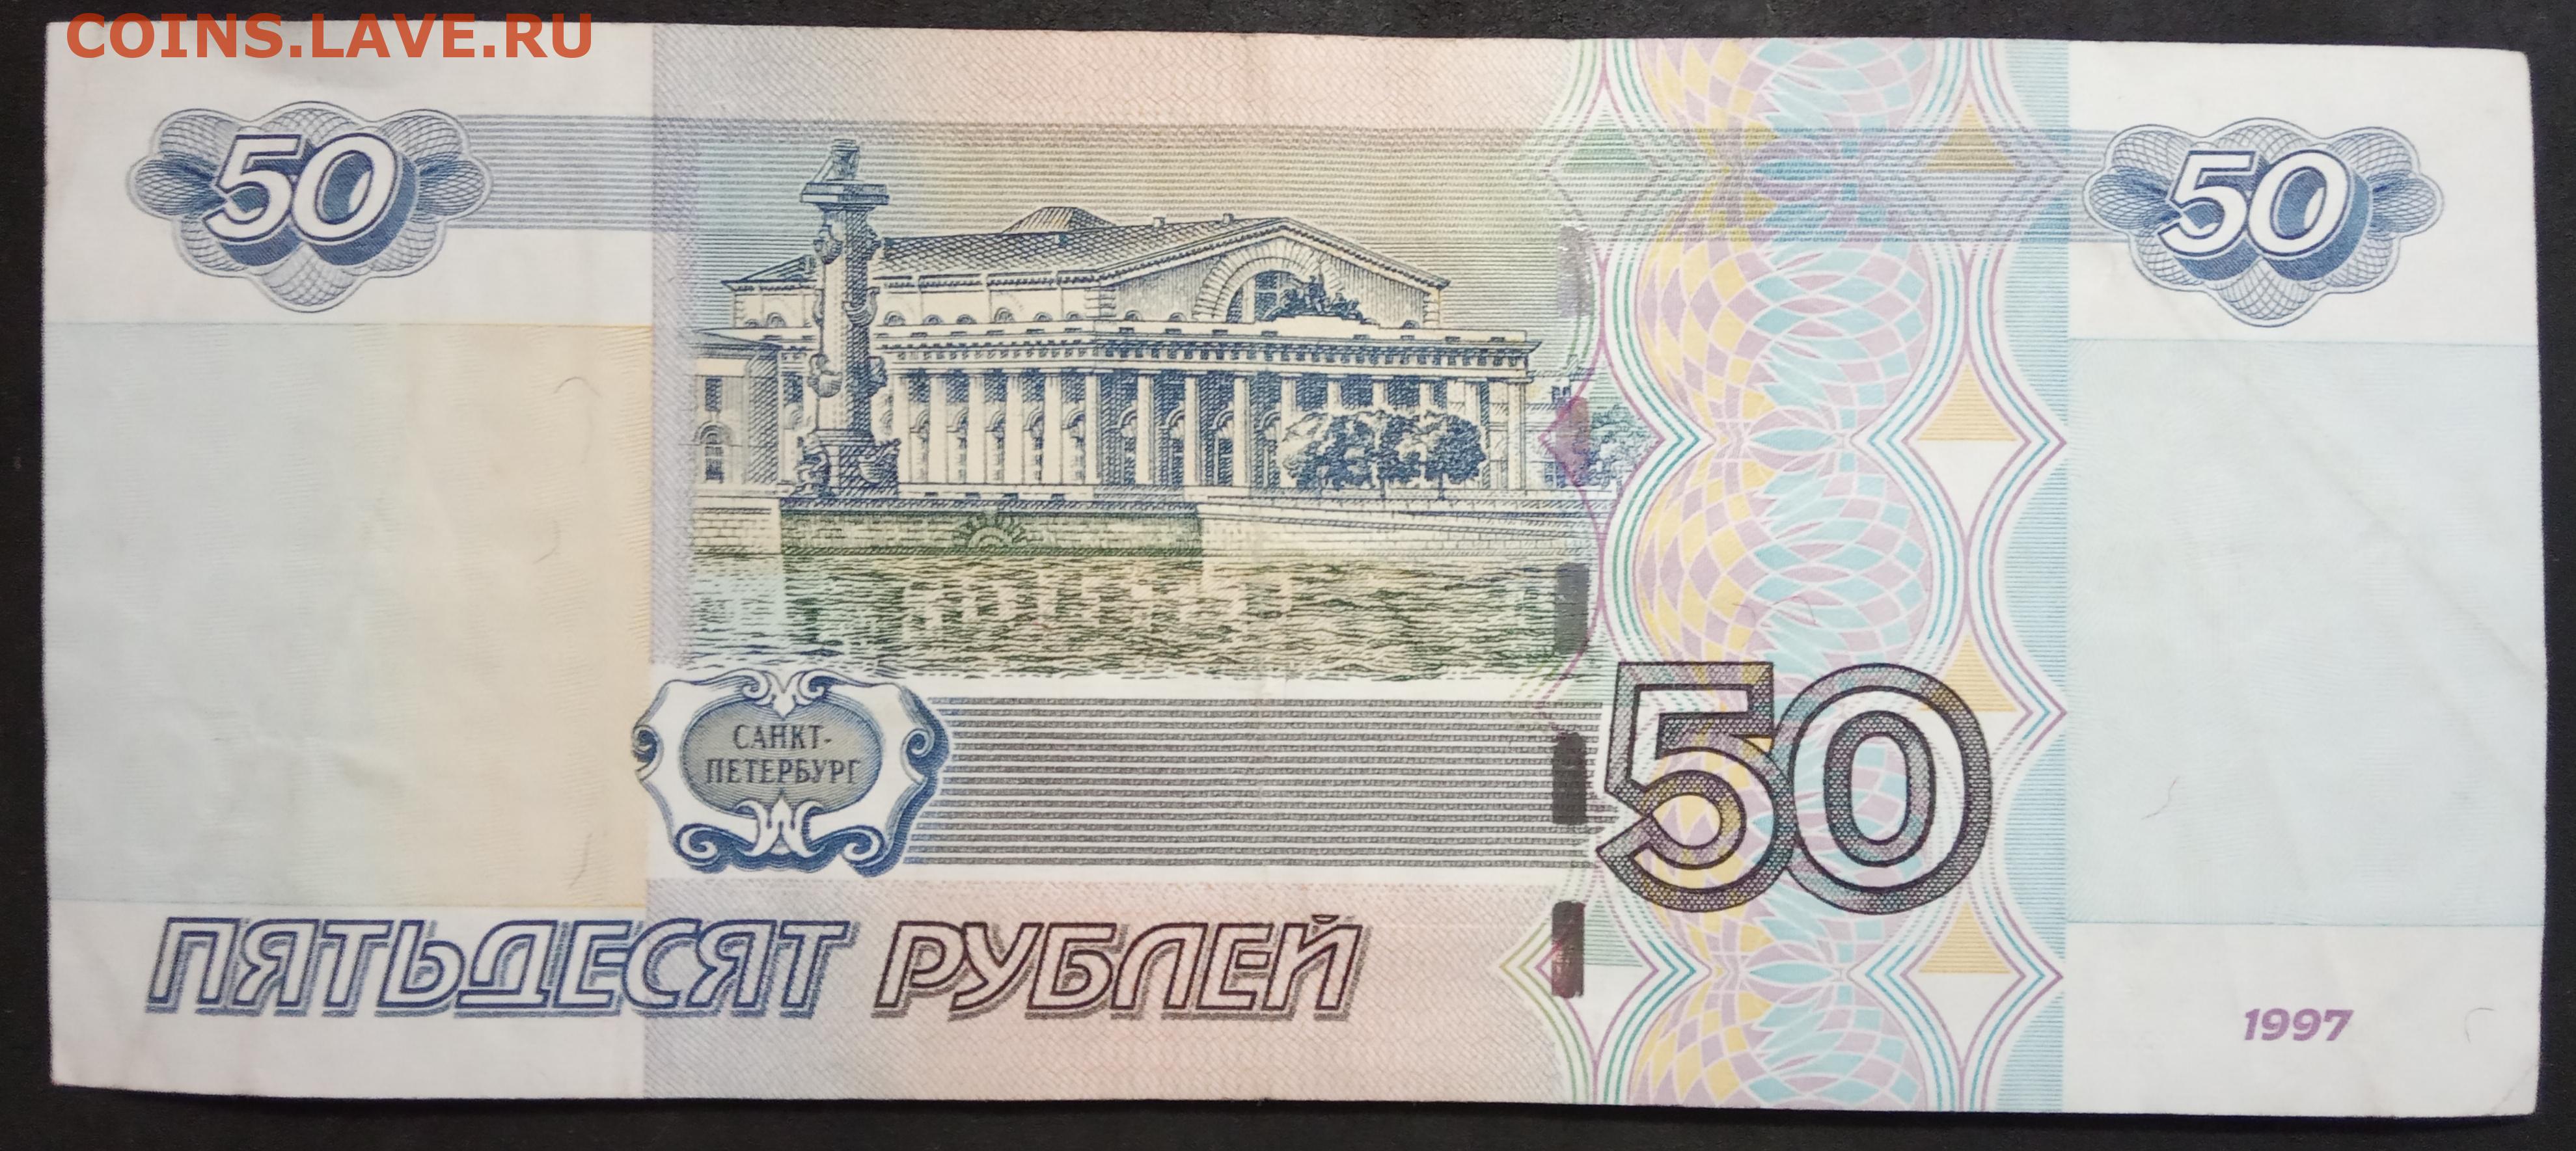 Пятидесяти штук. Деньги 50 рублей. Купюра 50 р. Купюра 50 рублей. Банкнота 50 рублей.